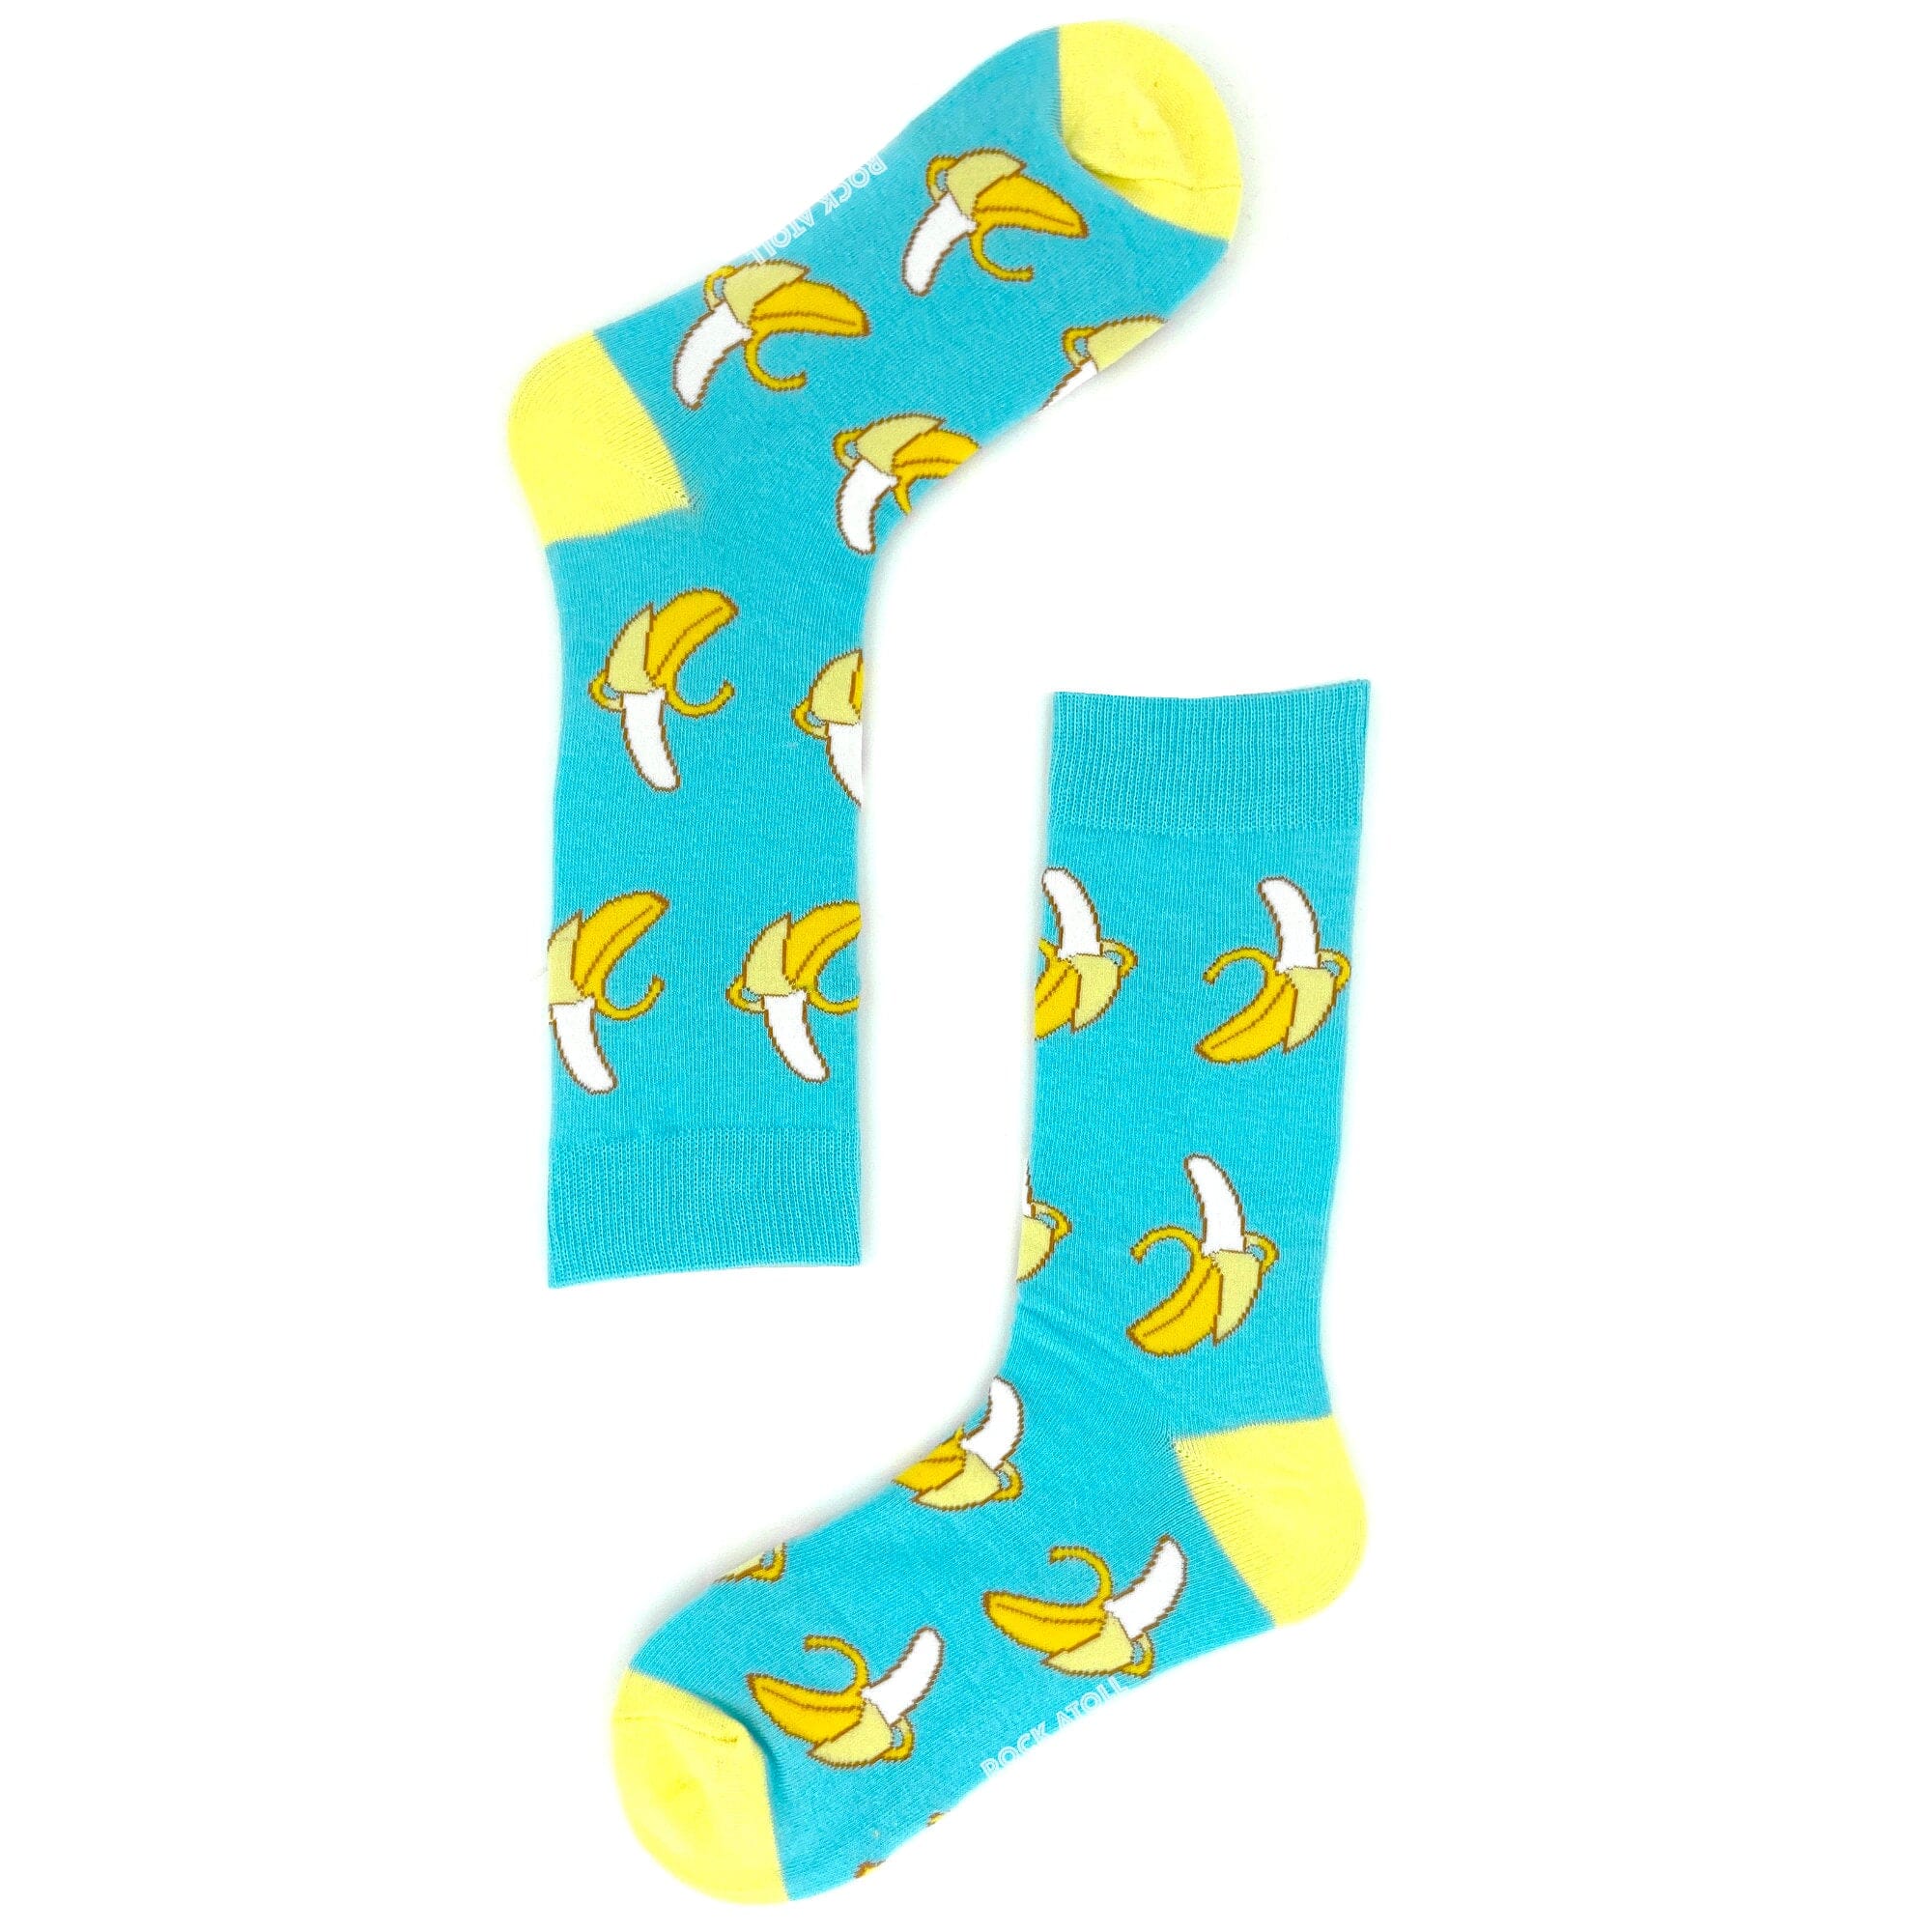 Unisex Bright Blue Funky Banana Peel Fruit Themed Novelty Crew Socks